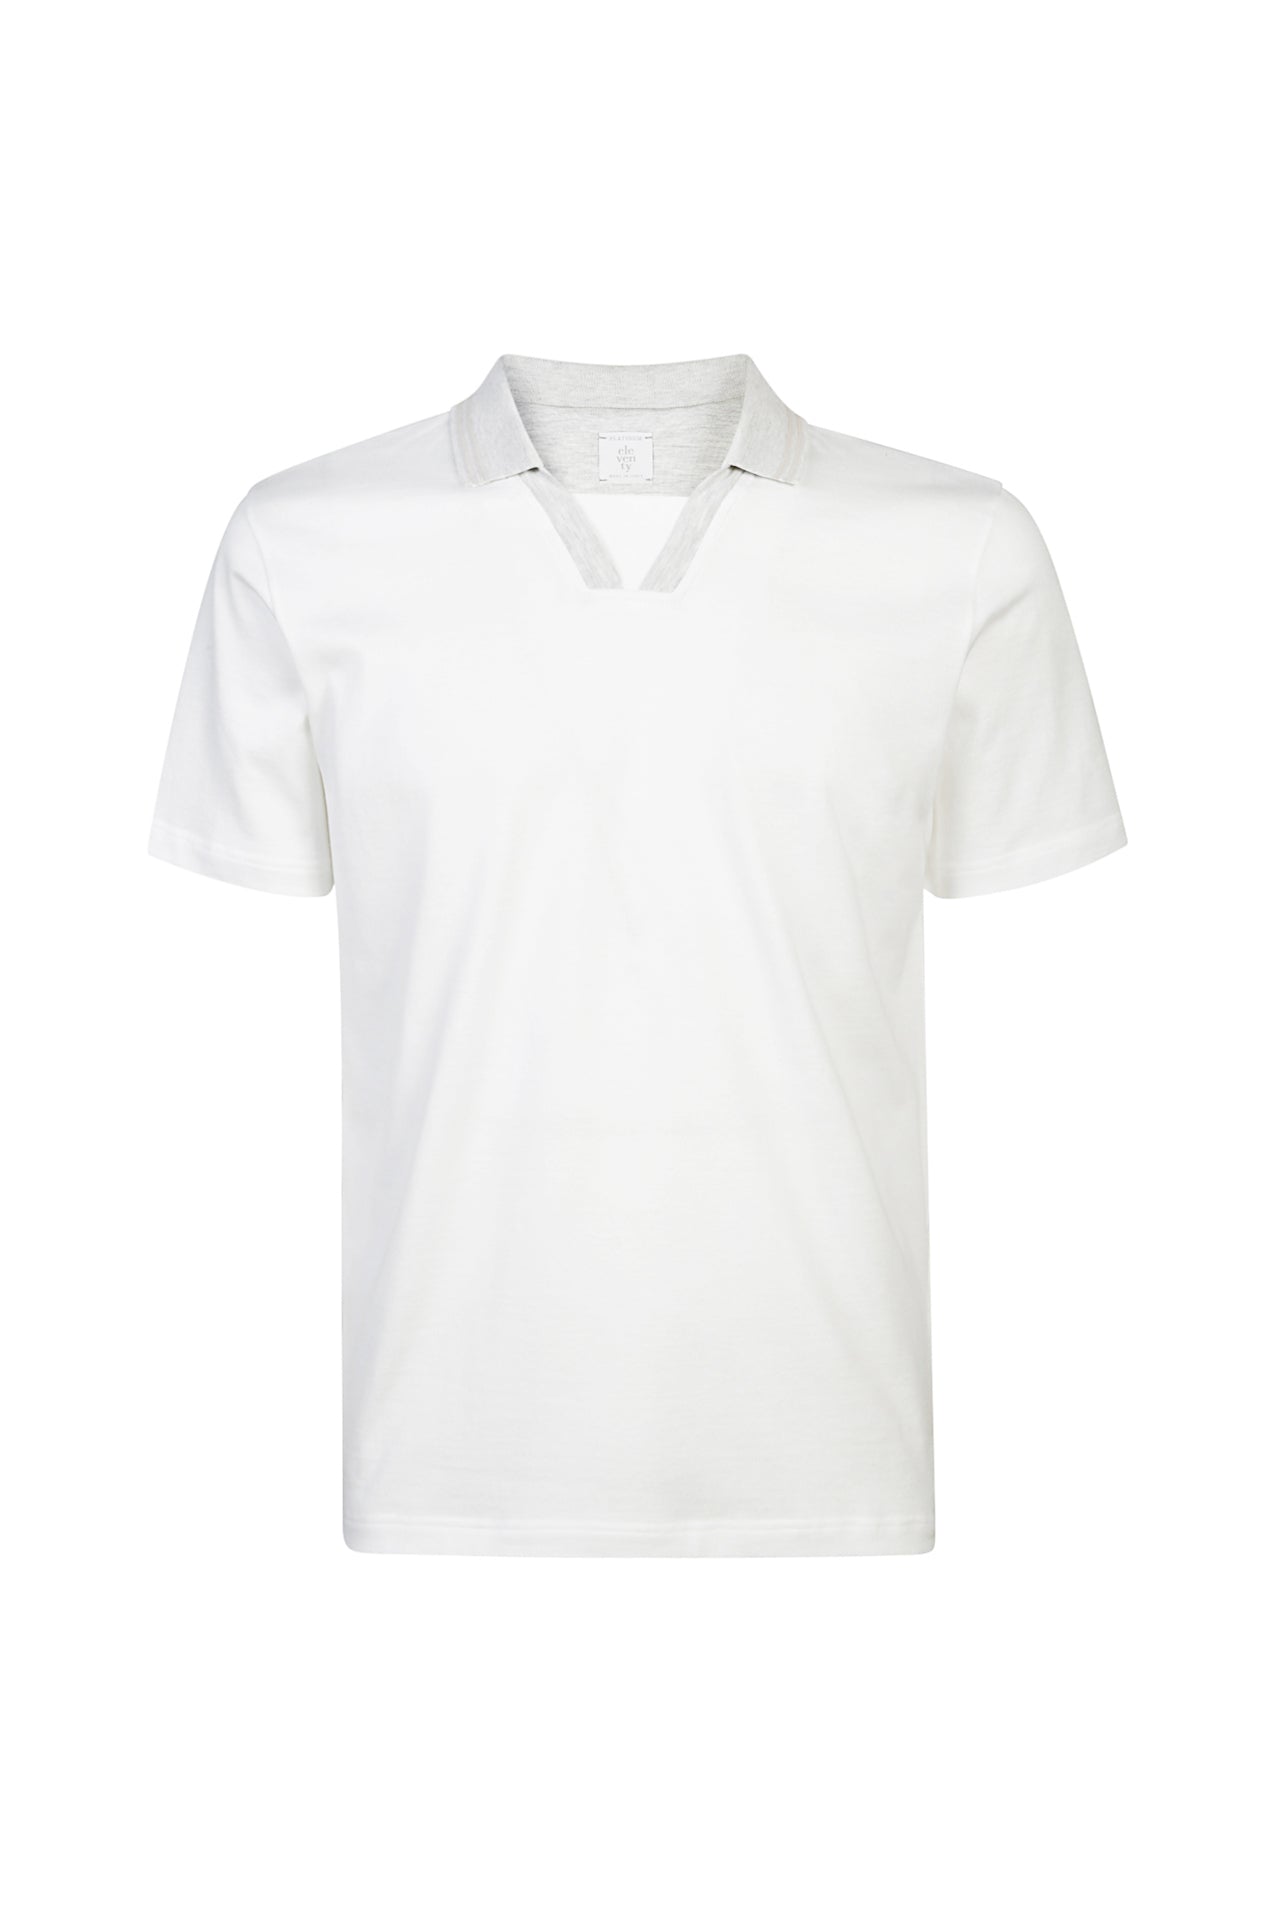 Eleventy T-Shirt Uomo Collo Polo-Bianco